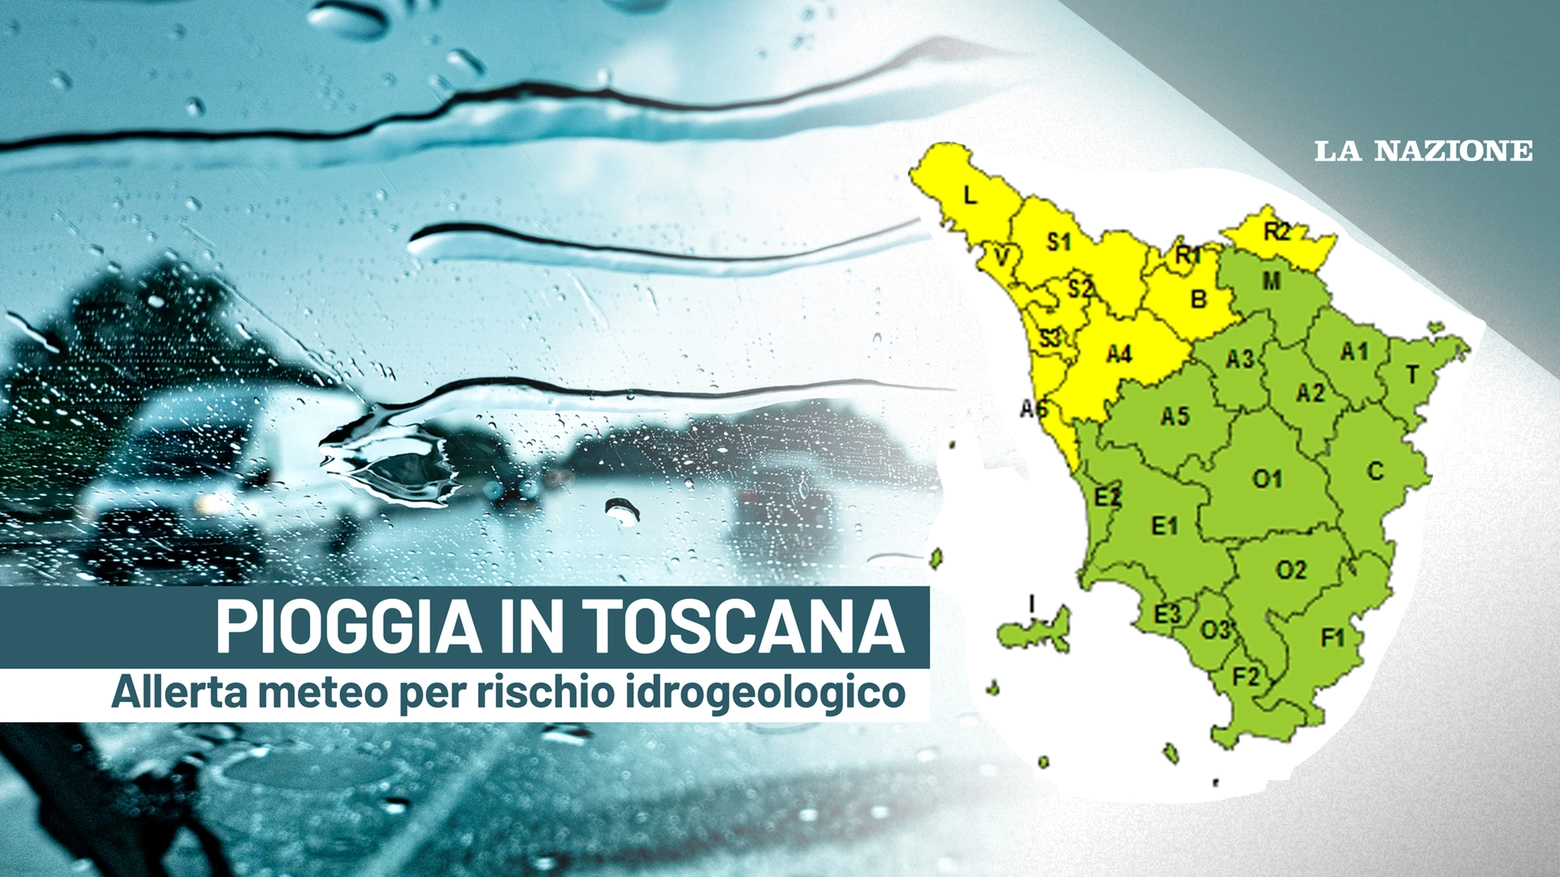 Maltempo in Toscana, allerta gialla per rischio idrogeologico